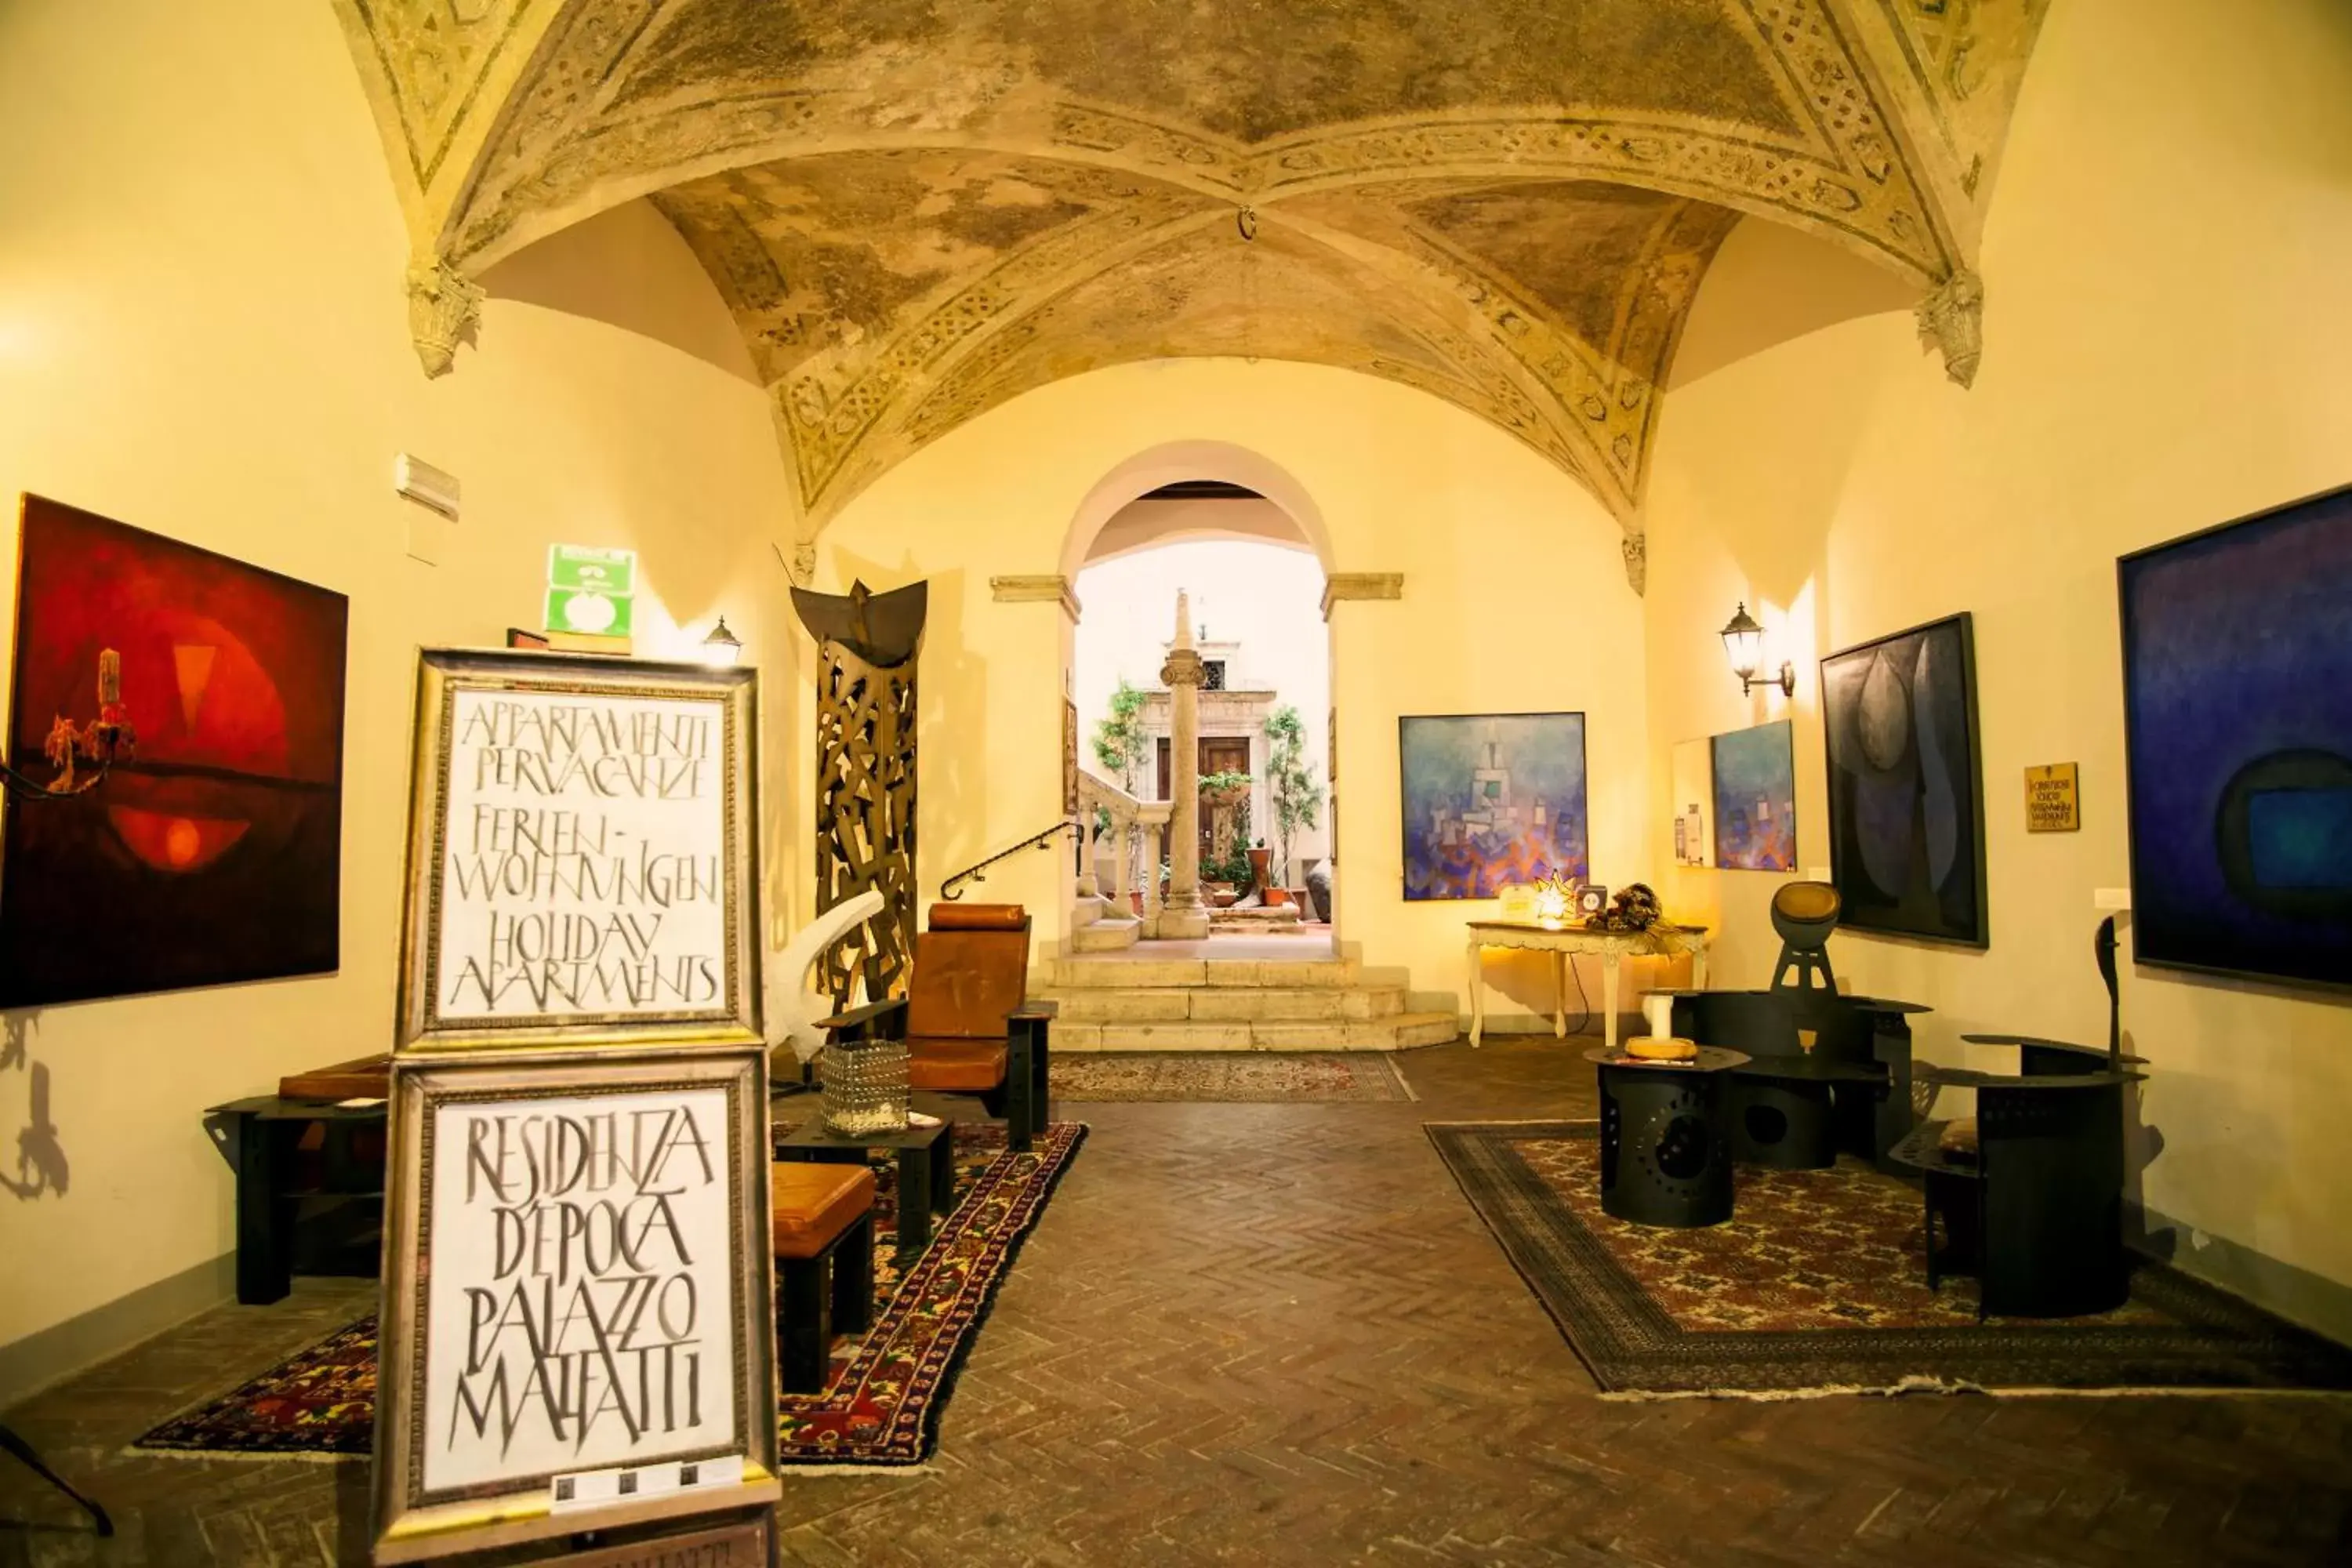 Lobby or reception in Residenza d'Epoca Palazzo Malfatti